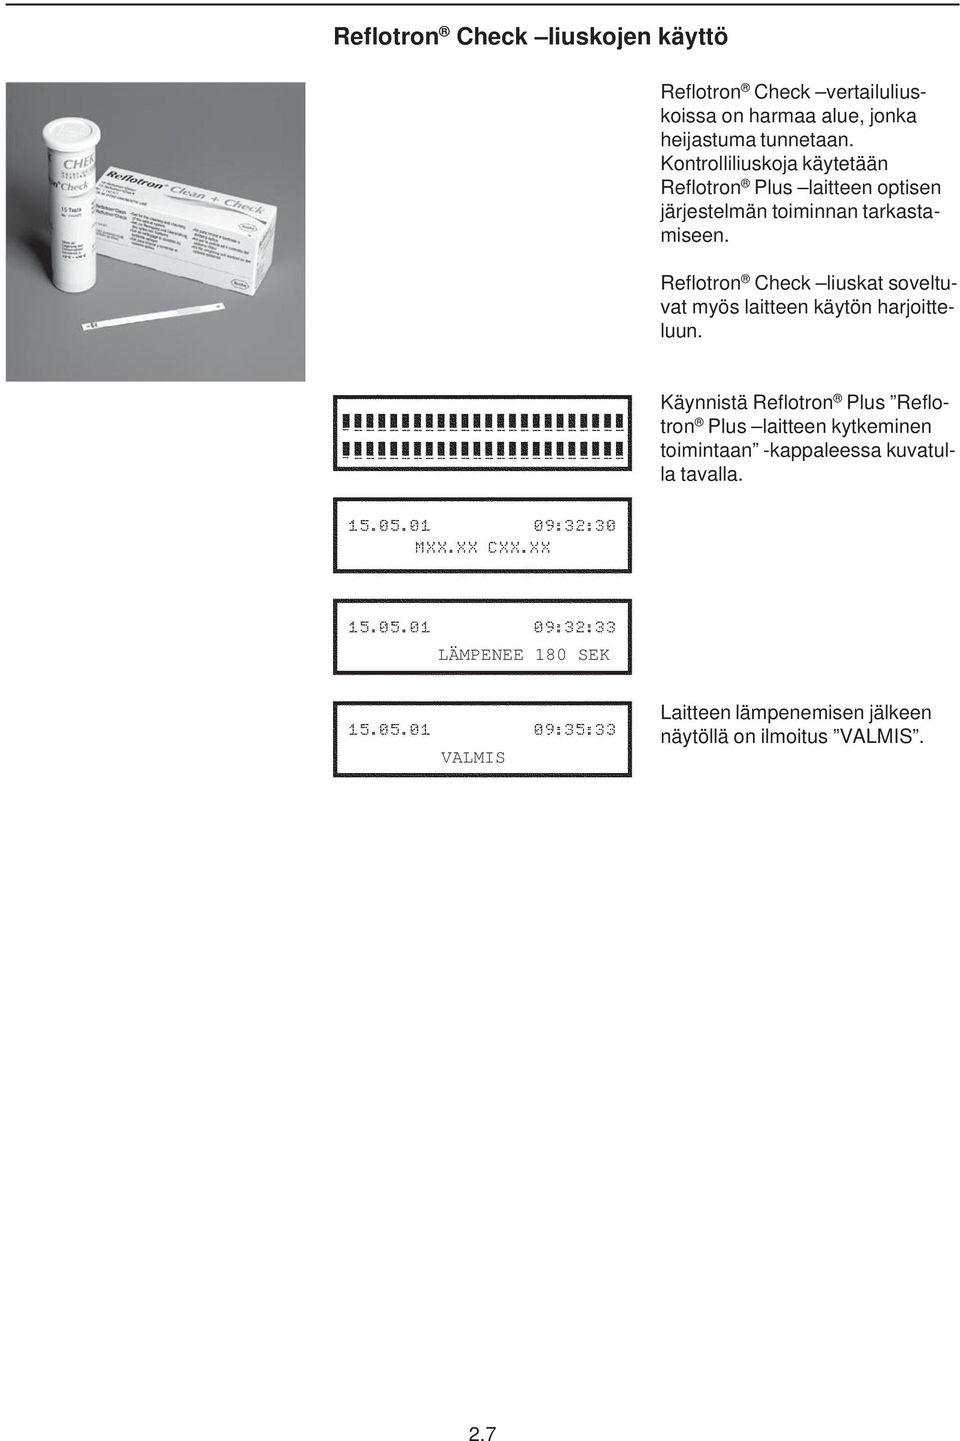 Reflotron Check liuskat soveltuvat myös laitteen käytön harjoitteluun.